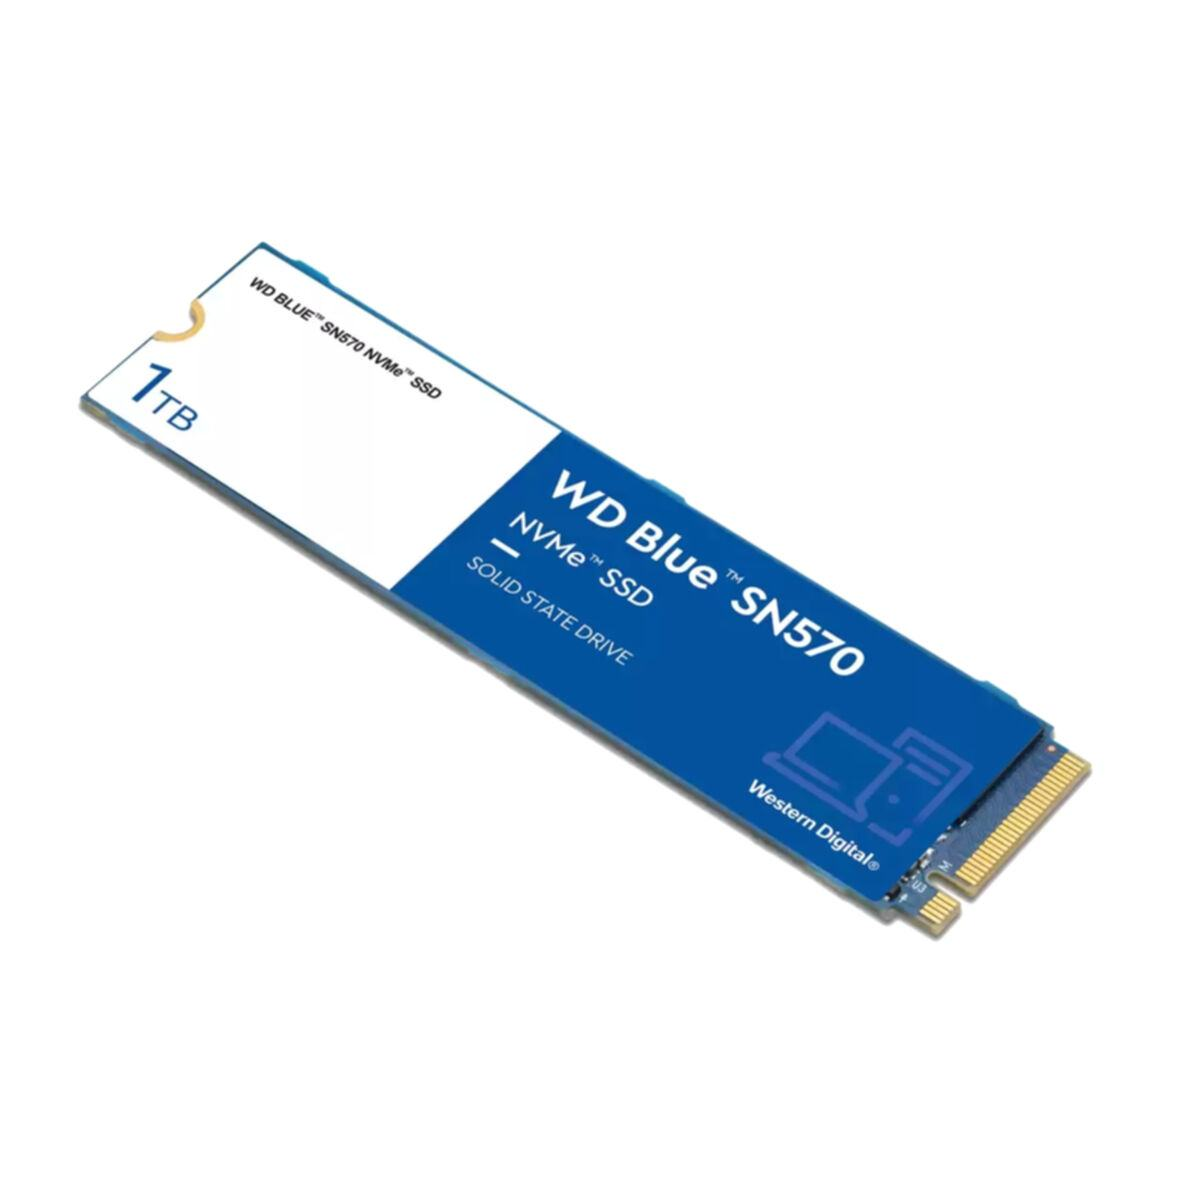 WESTERN DIGITAL WD SN570, SSD, 1000 Blue intern GB